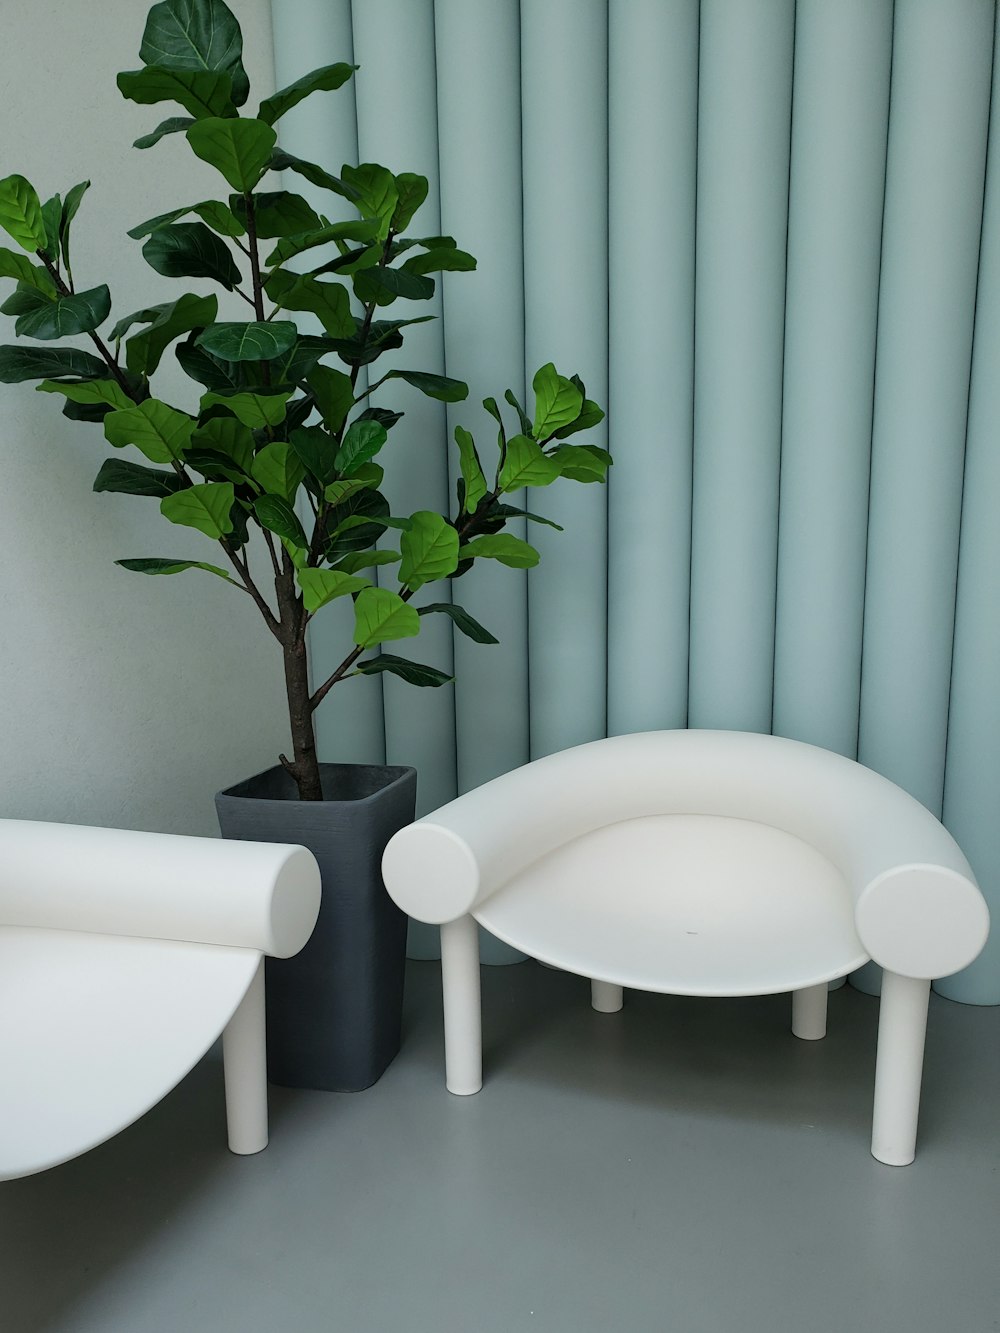 uma planta em um vaso preto ao lado de uma cadeira branca